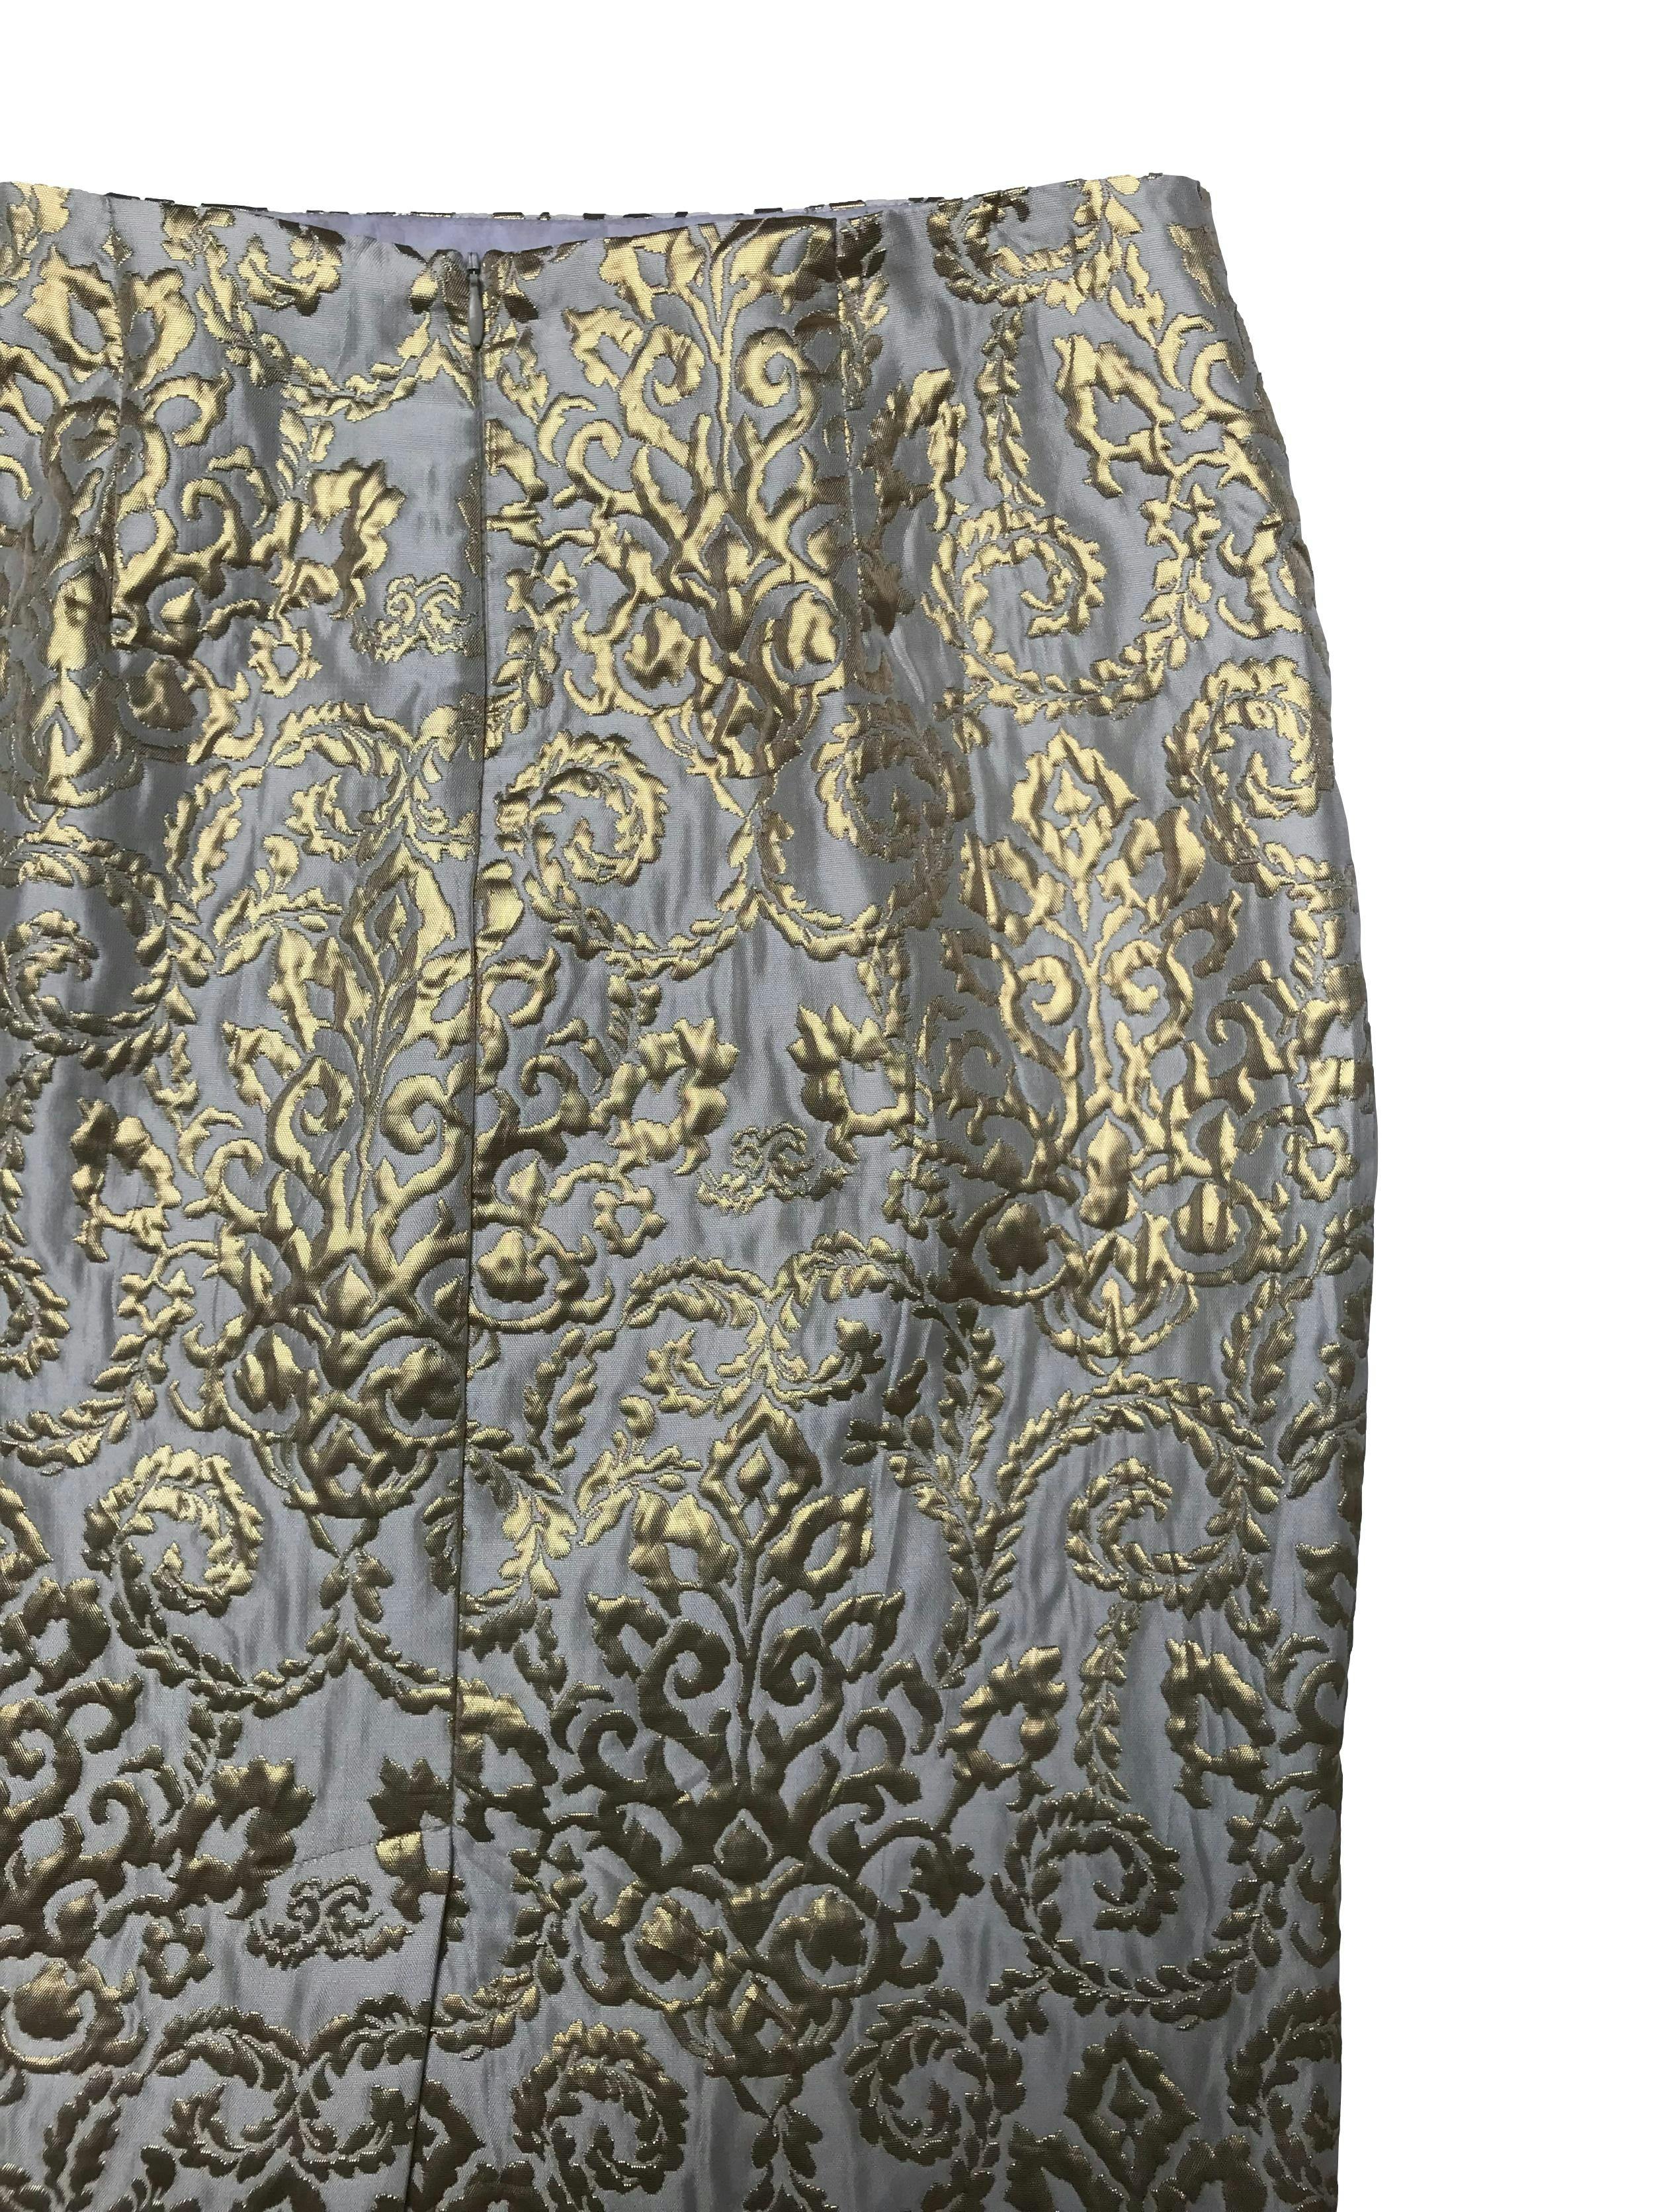 Falda Sunny Leigh crema con brocado dorado satinado, corte recto, forrada, con cierre posterior. Cintura 76cm Largo 58cm